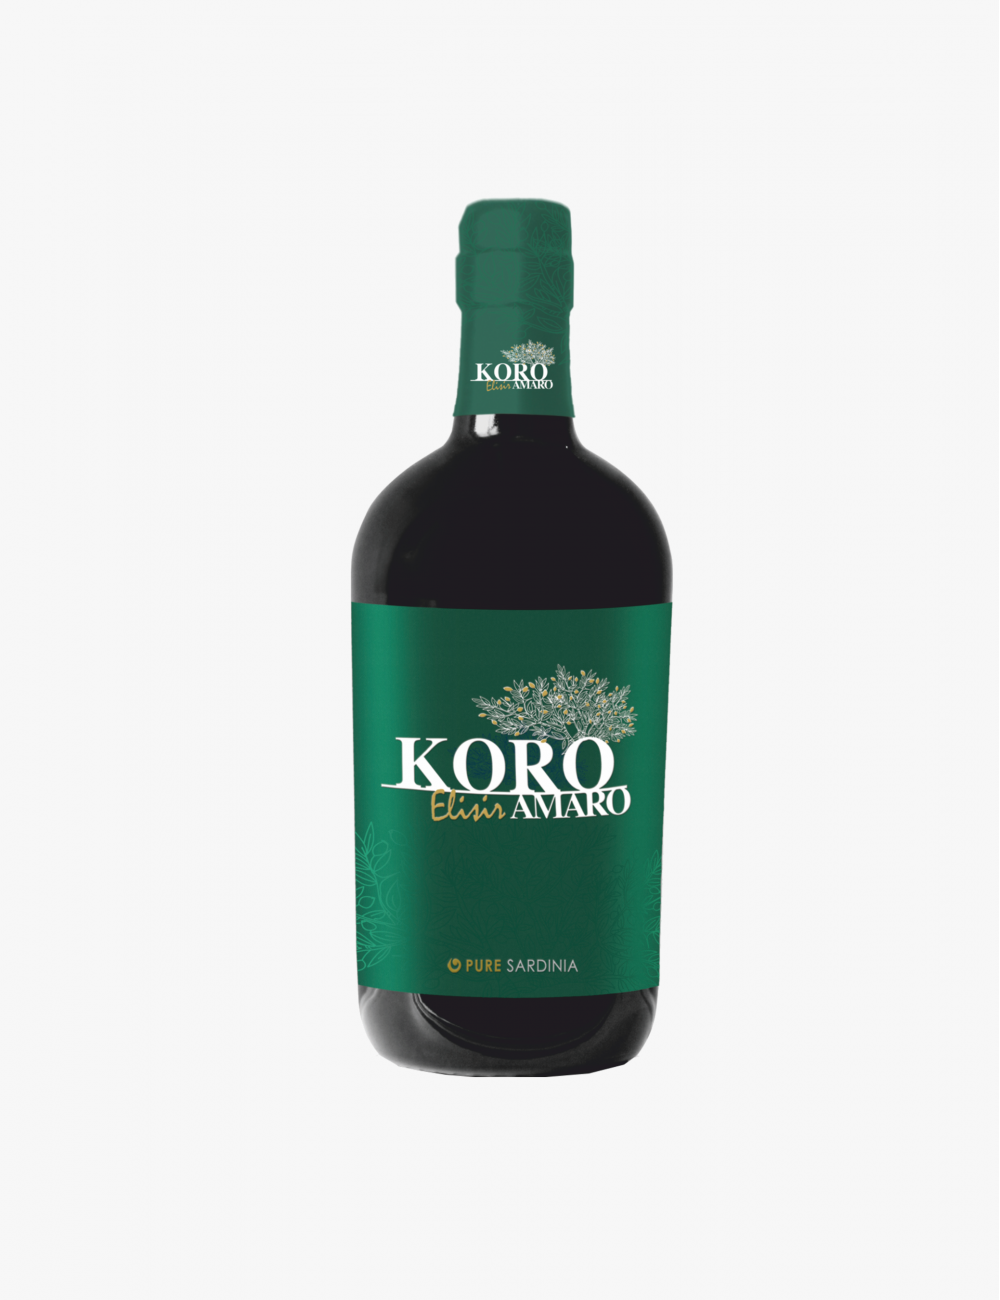 KORO Elisir Amaro Pure Sardinia